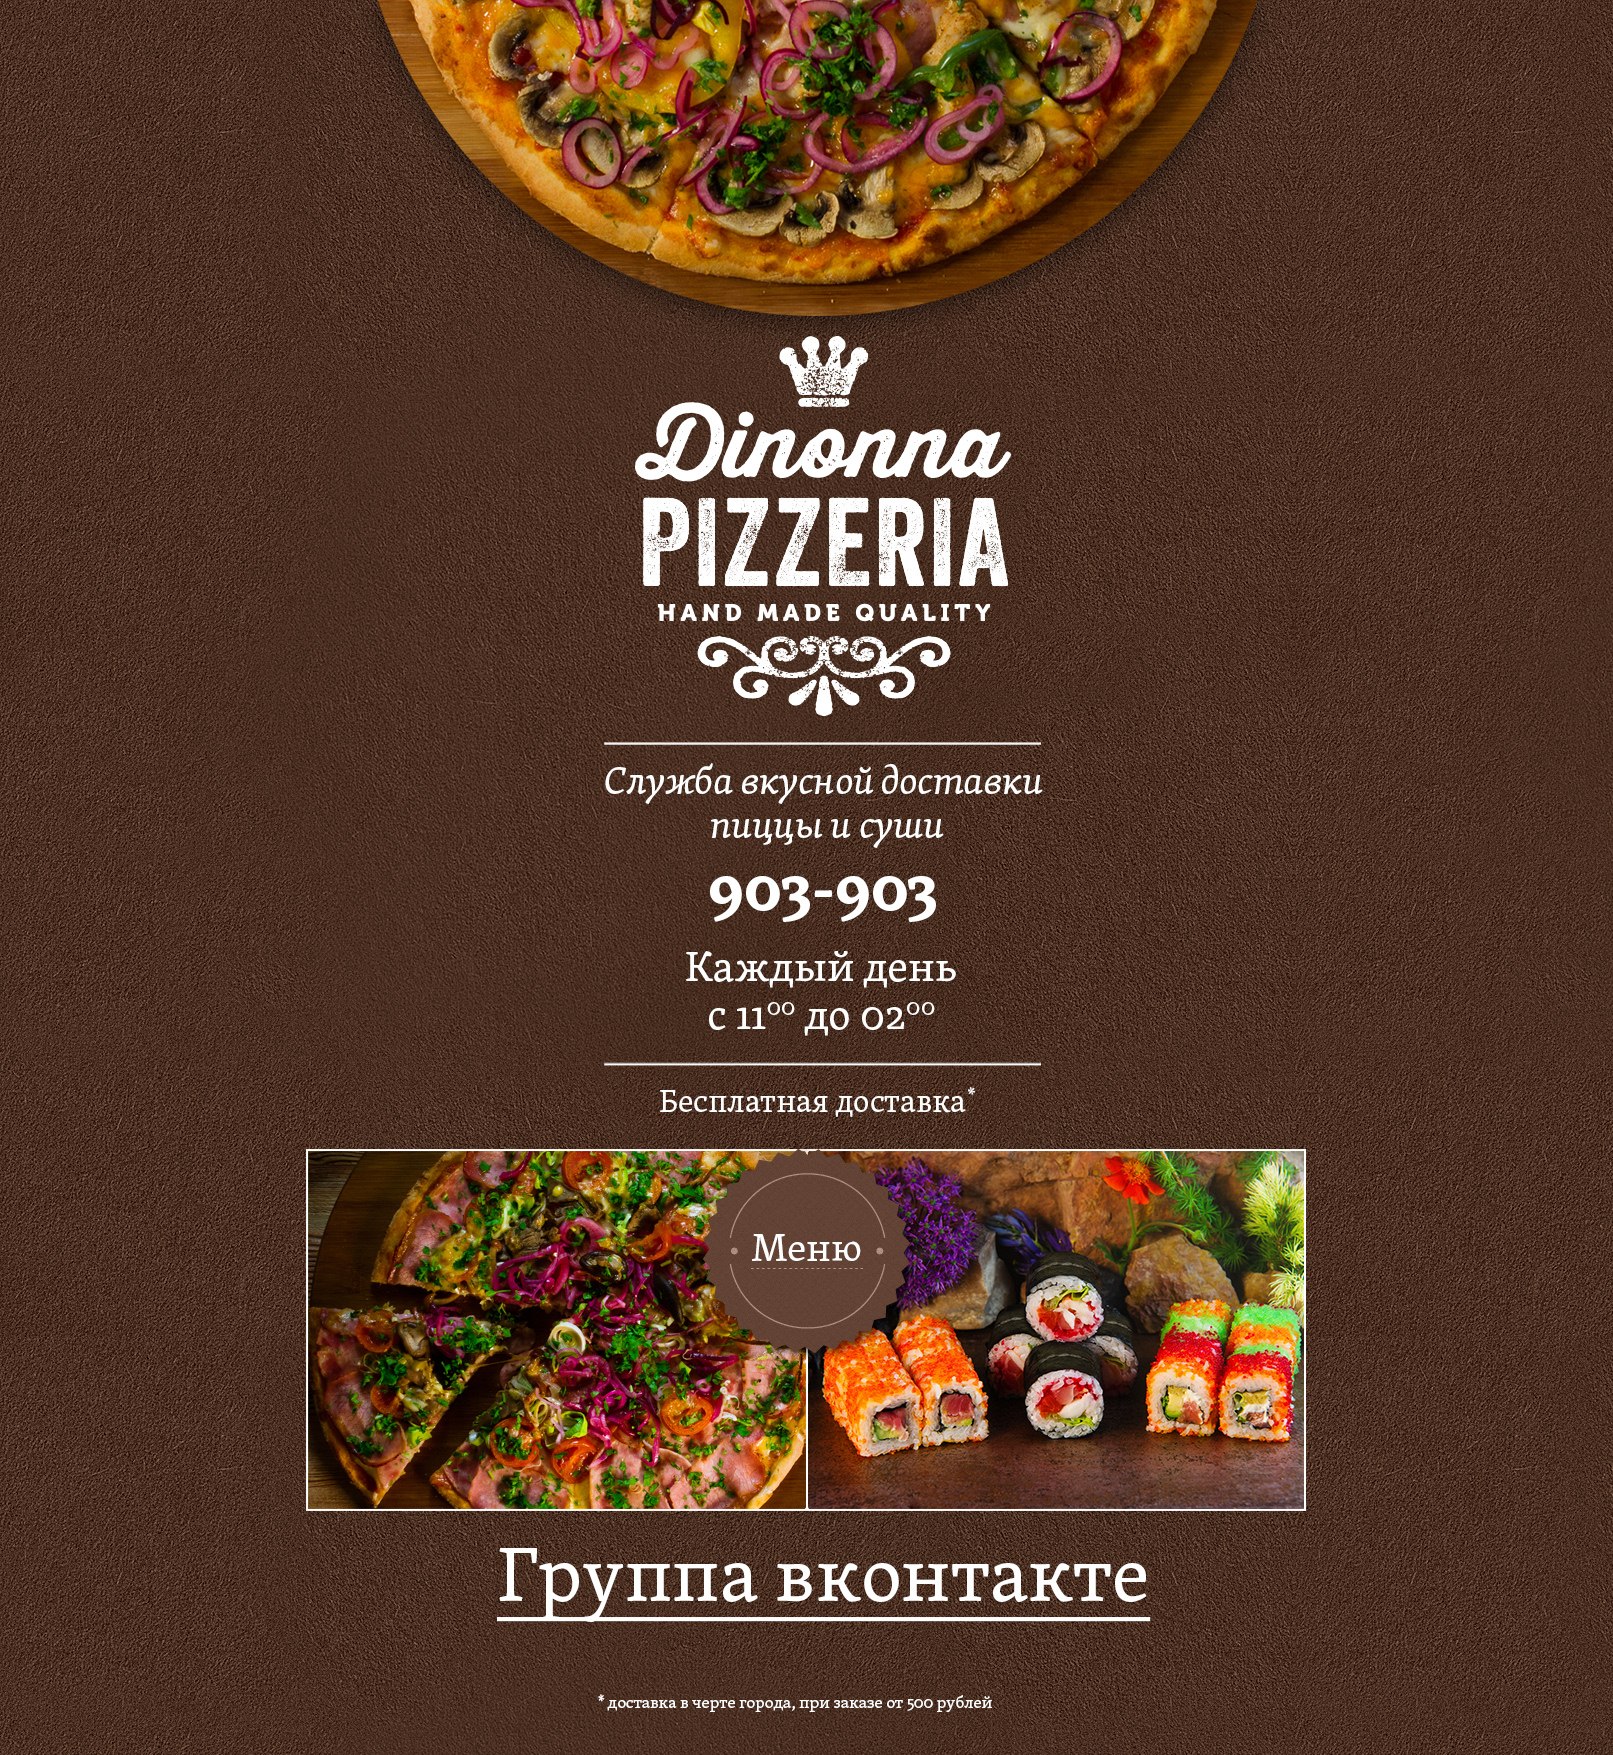 Логотип и фирменный стиль пиццерии Dinonna